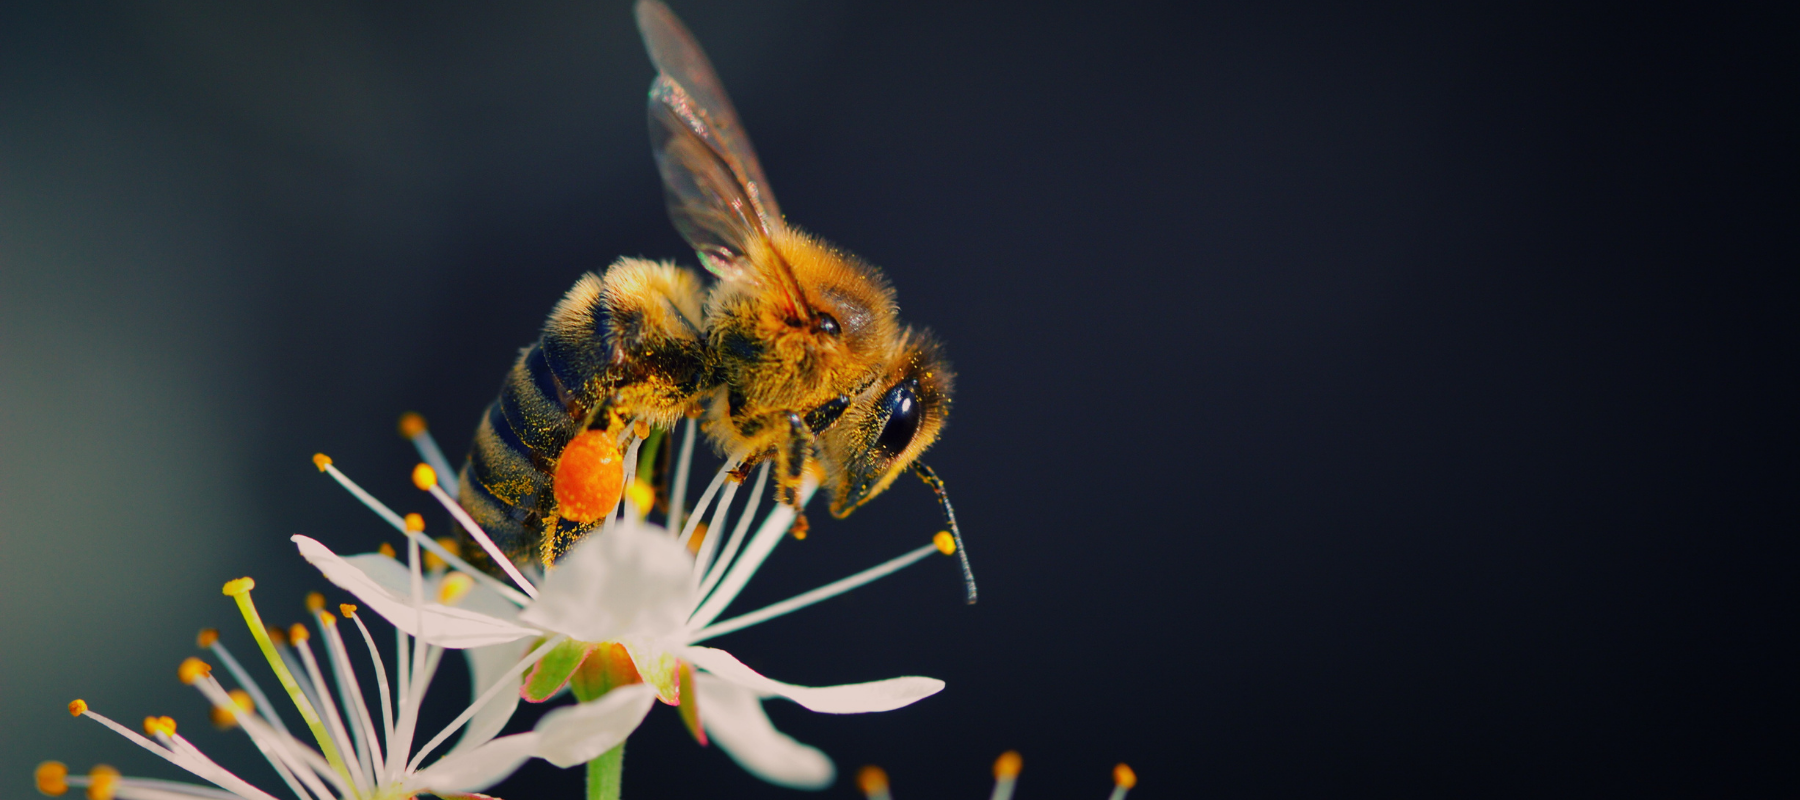 Bees under threat